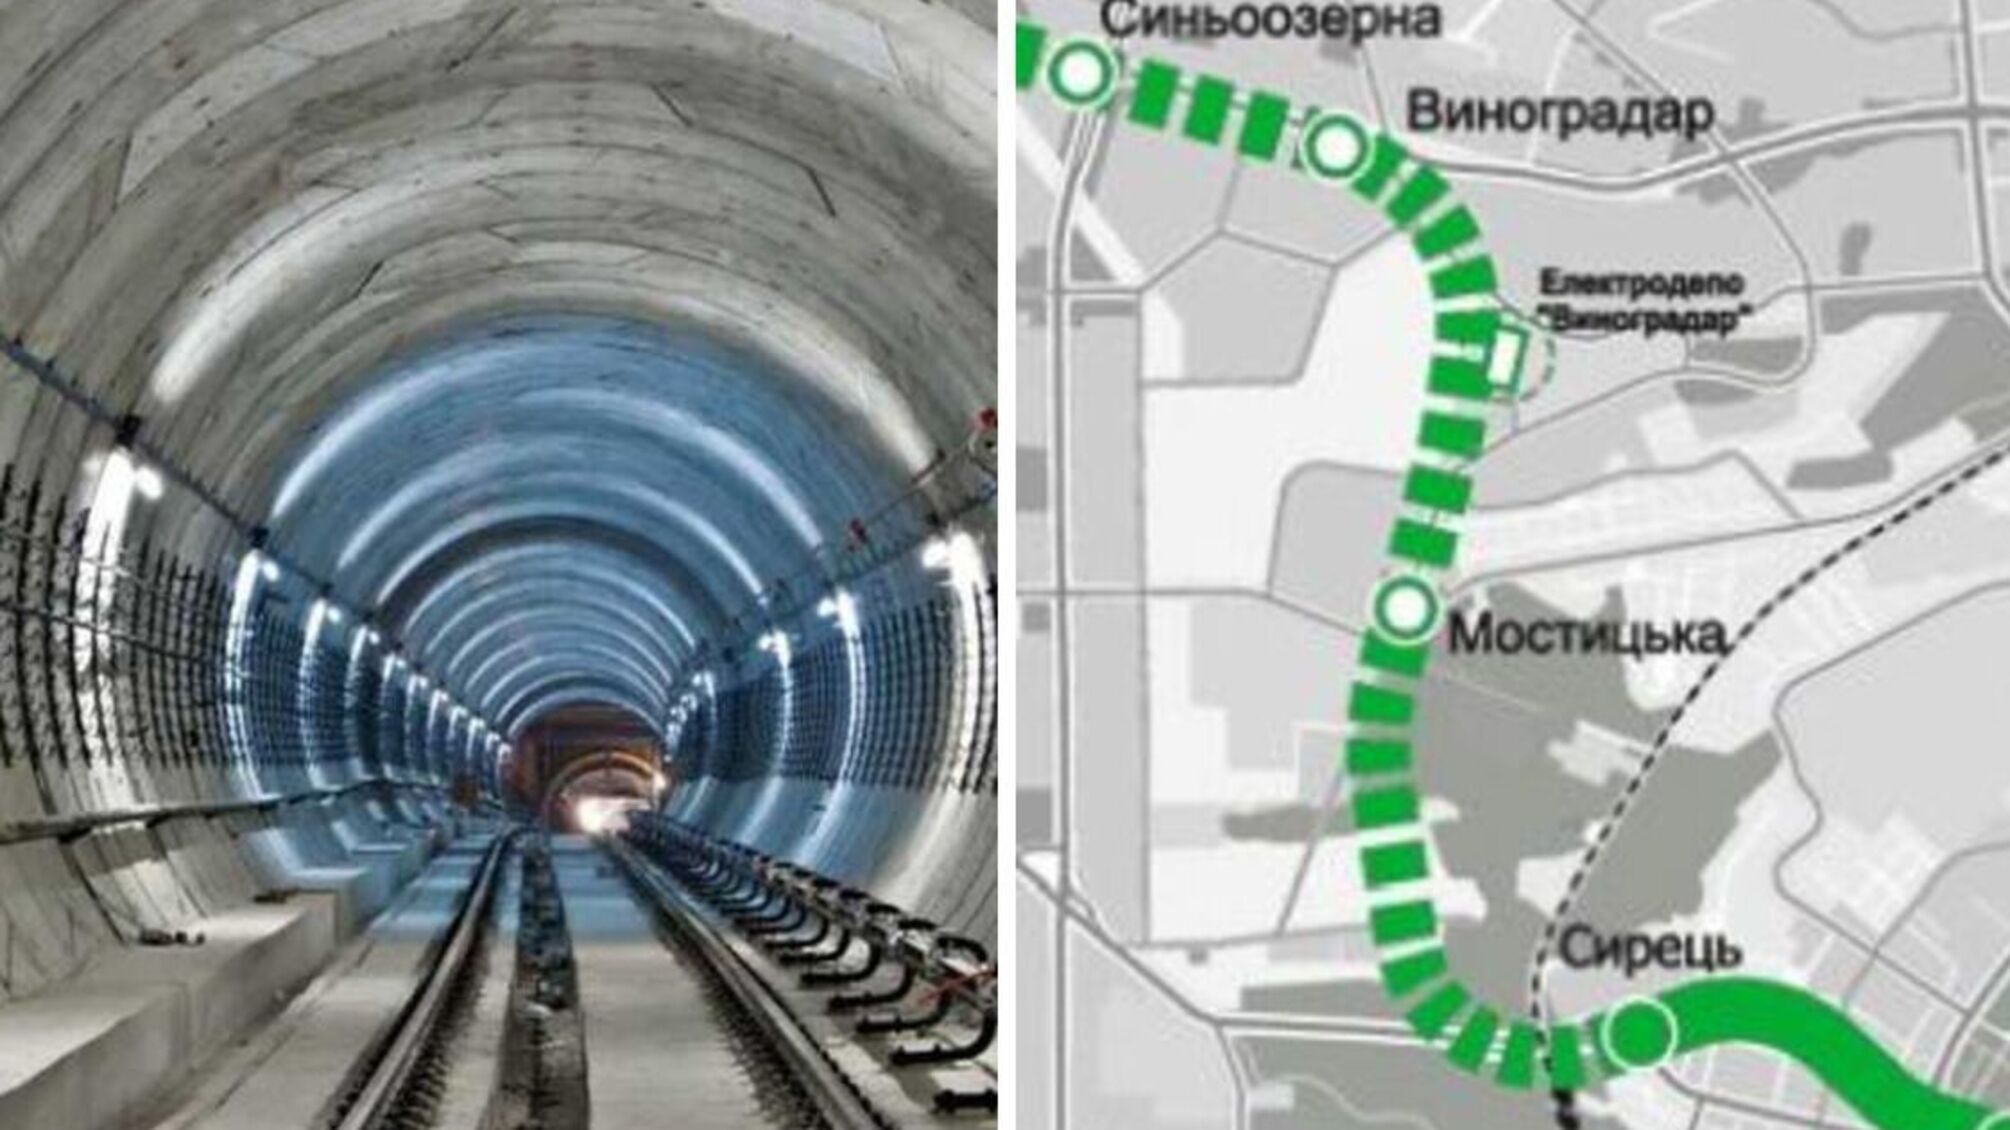 Кличко извинился перед киевлянами: строительство метро в Виноградарь возобновлено